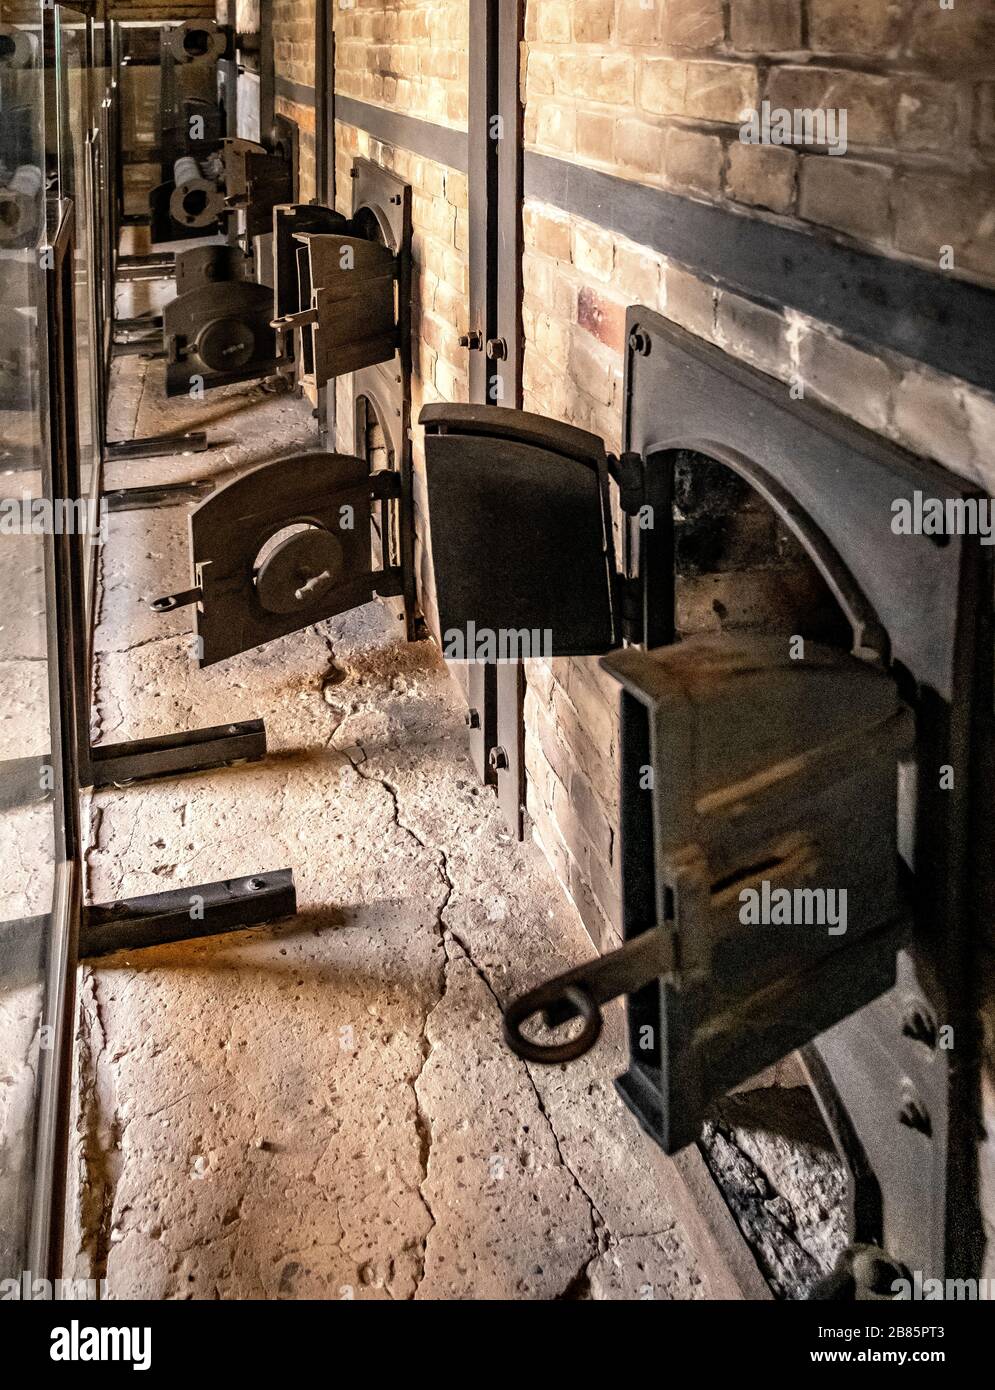 Lublin, Lubelskie / Polonia - 2019/08/17: Forni crematori ricostruiti del campo di concentramento e sterminio di Majdanek KL Lublin Nazis Foto Stock